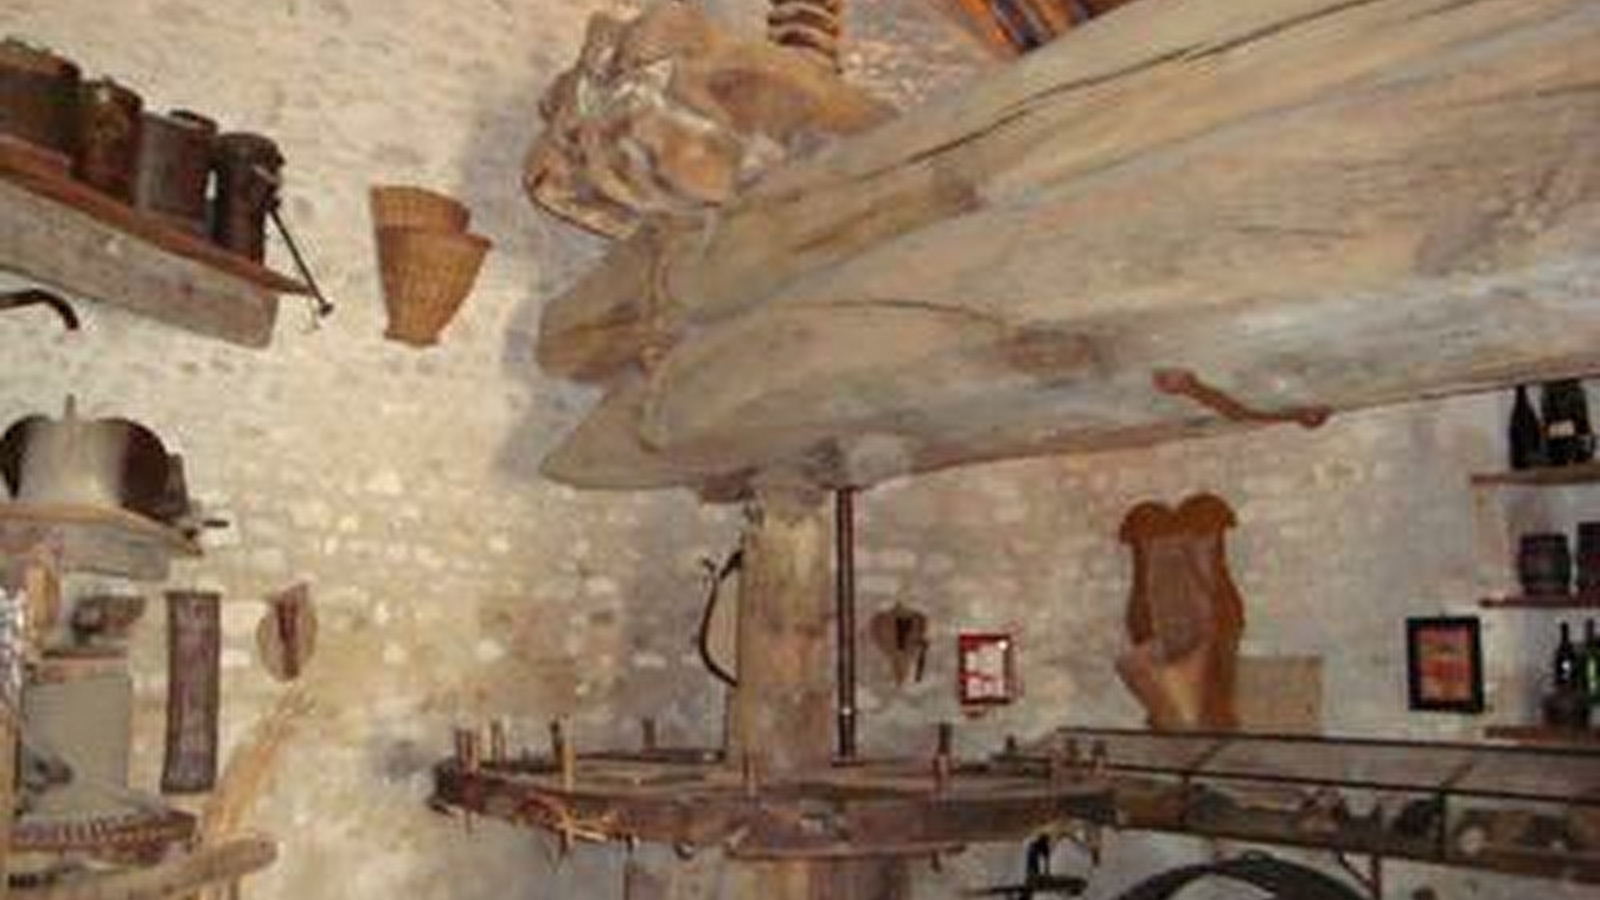 Musée de la Vigne et du Vieux Pressoir